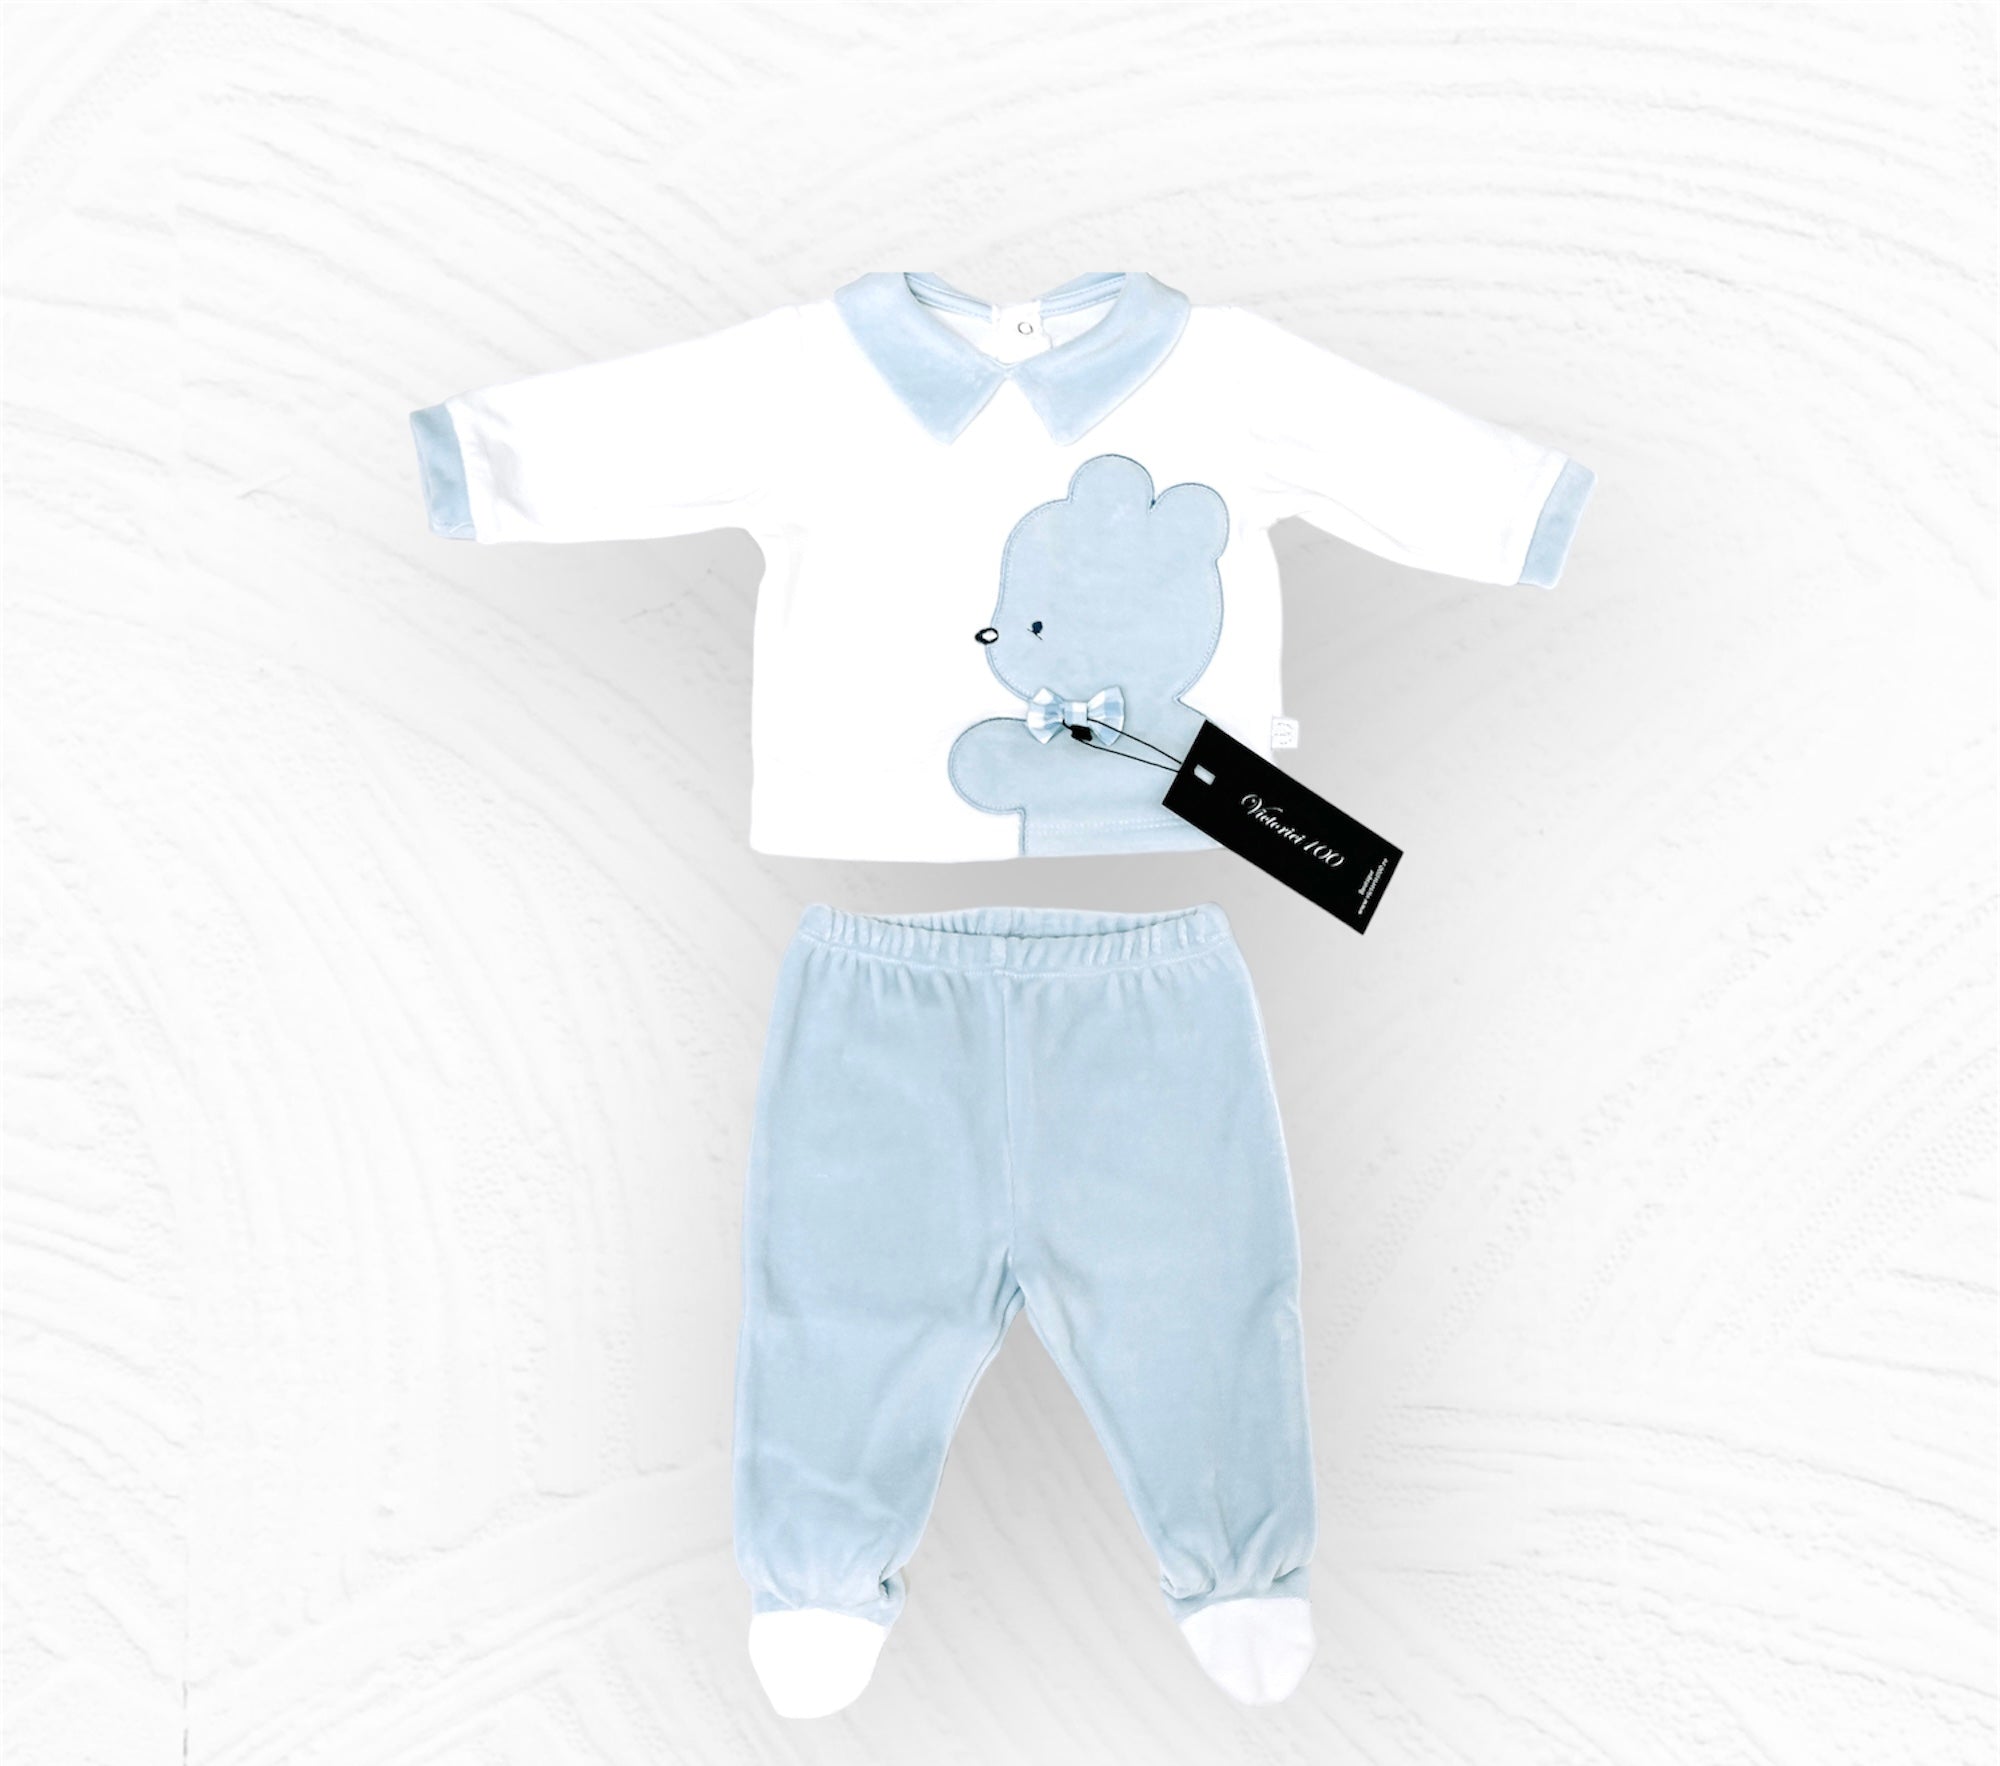 Compleu bebeluși baieței pantaloni și bluză bleu/alb cu ursuleț